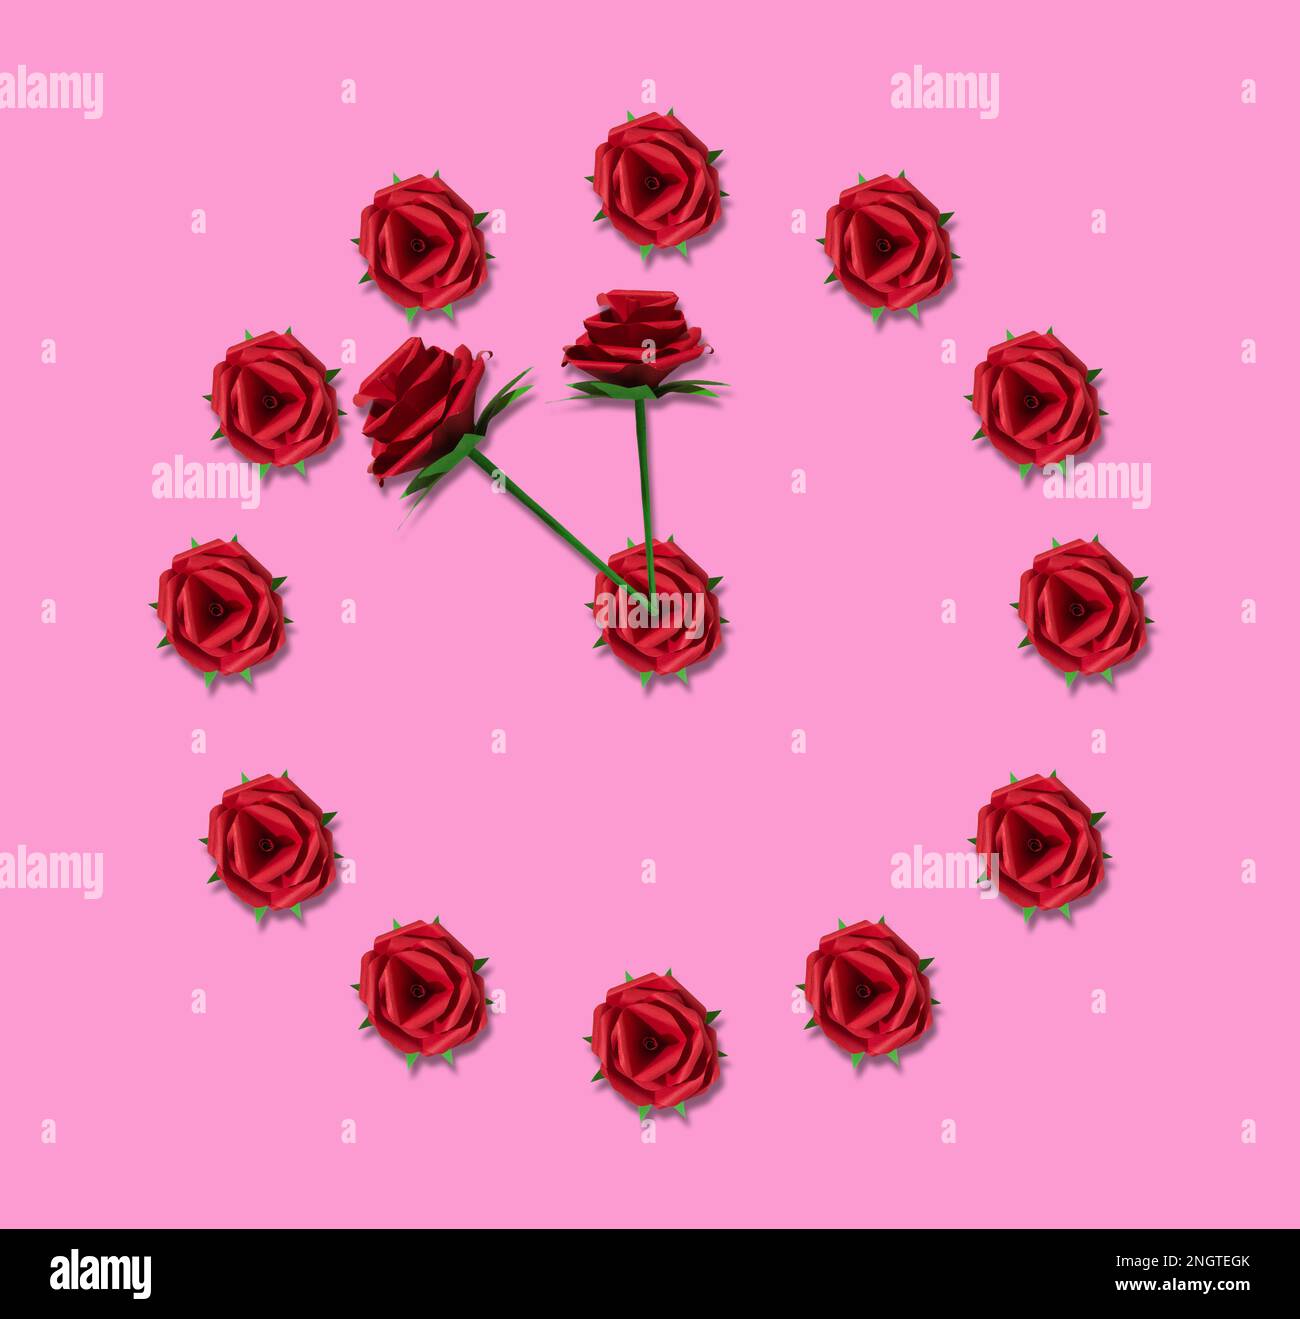 Uhrrosa, eine Uhr aus roter Rose auf pinkfarbenem Hintergrund, kreatives Kunstdesign für Feiertage, romantische Zeit Stockfoto